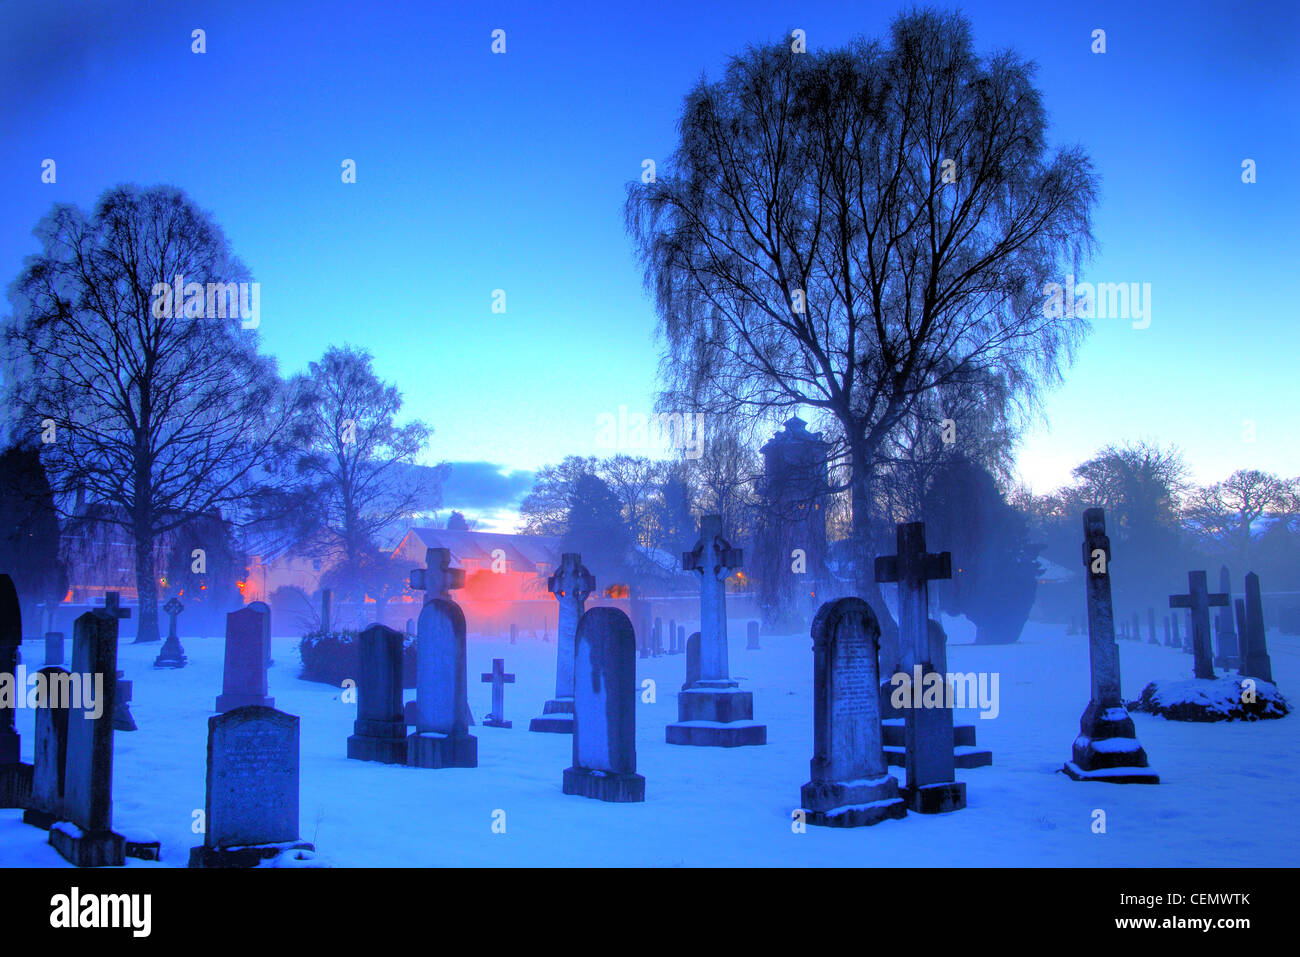 Dalkeith cimitero del crepuscolo, Midlothian, Edimburgo, Scozia, Regno Unito un blu, ghiaccio, ghiacciato, inverni freddi notte con basse temperature. Foto Stock